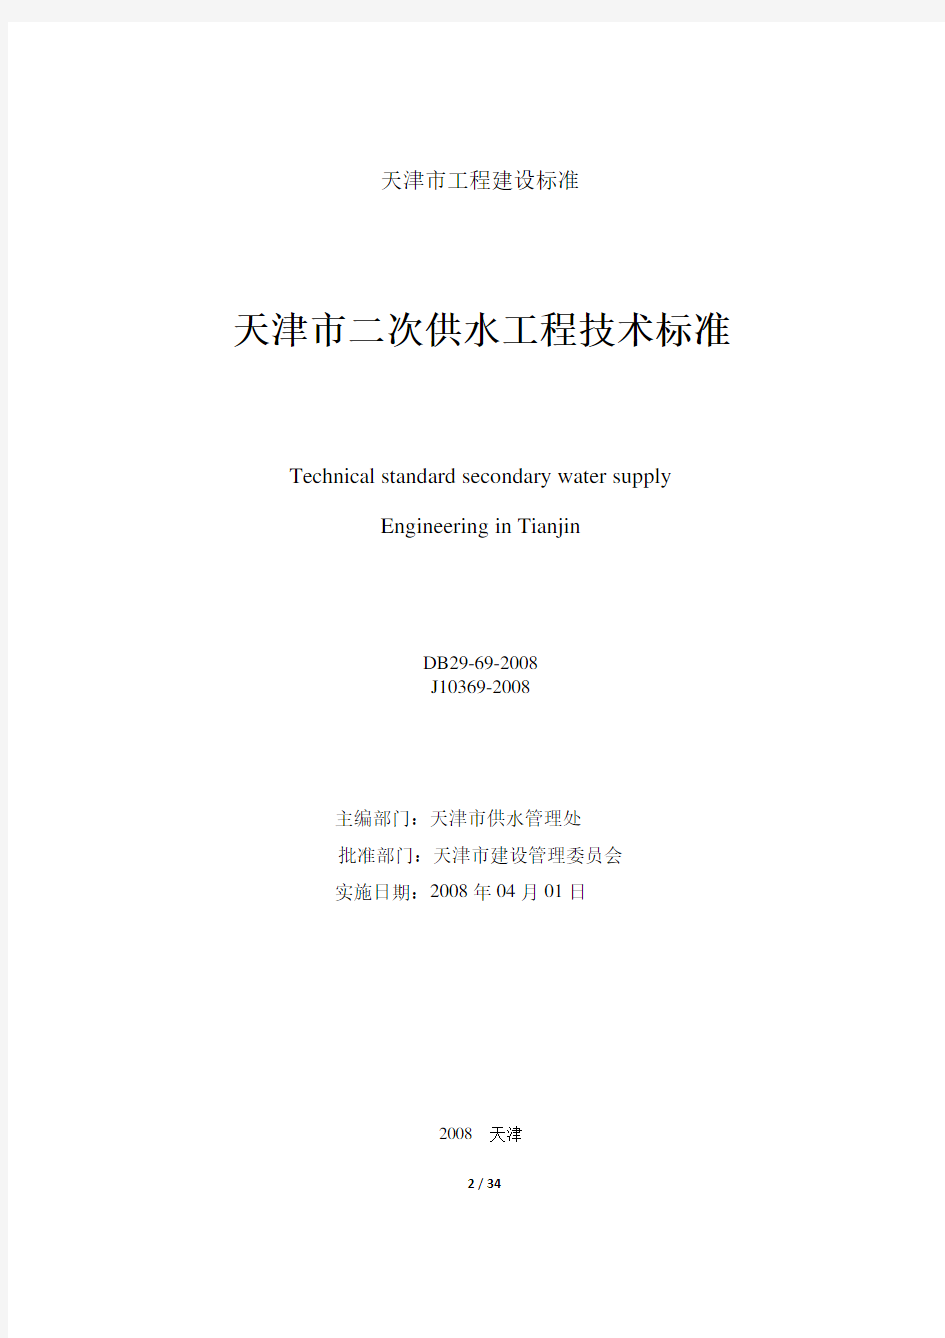 天津市二次供水工程技术标准(新版)